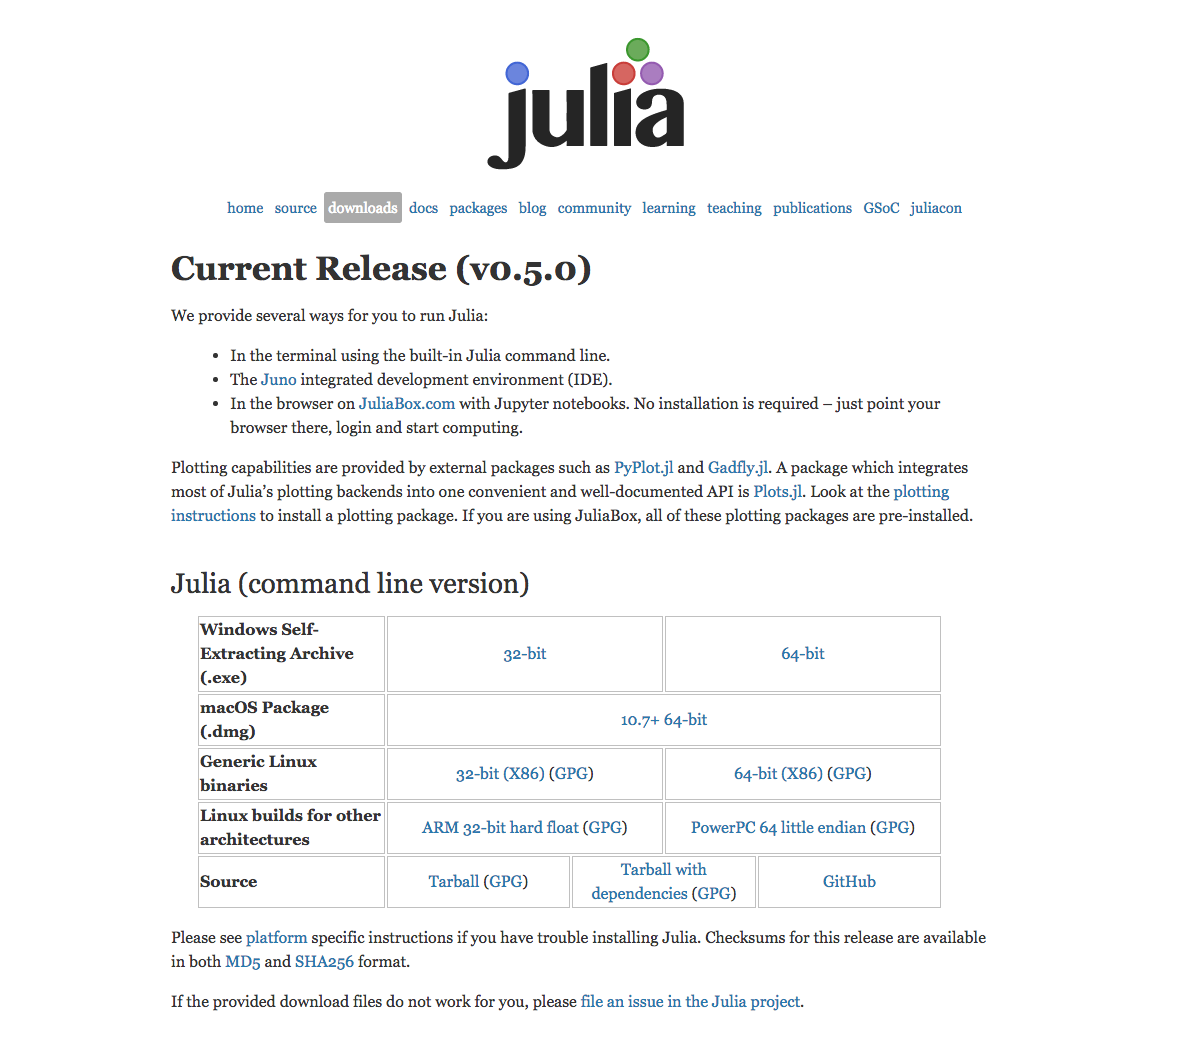 図1: Juliaダウンロードページ（画像は2016年9月30日時点のもの）